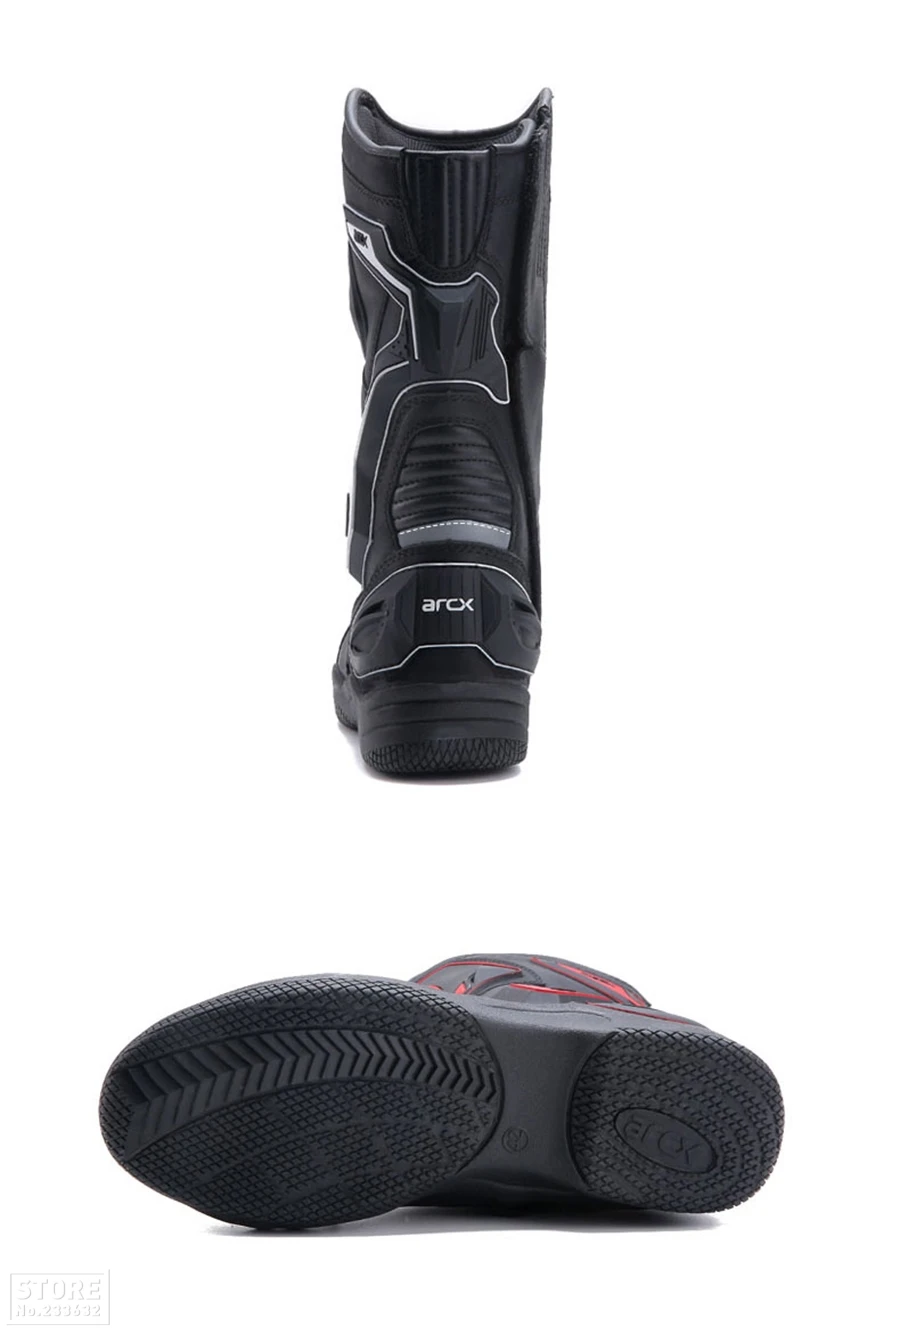 ARCX/ботинки в байкерском стиле; высококачественные кожаные ботинки для мотокросса; мужские водонепроницаемые ботинки в байкерском стиле; Botas Moto